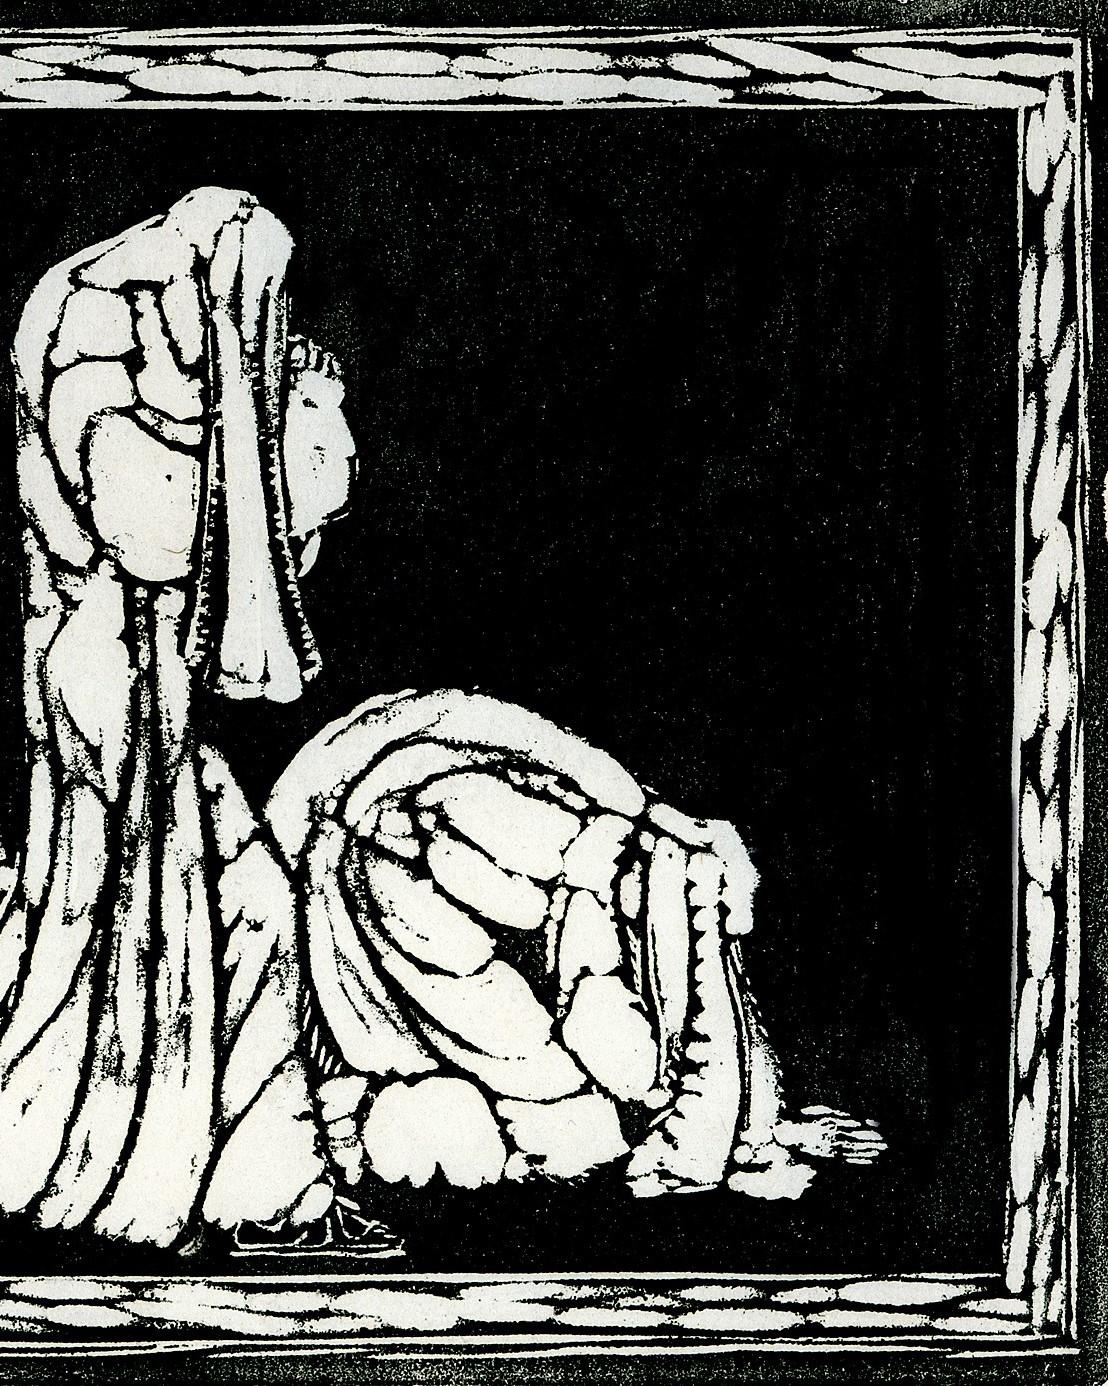 Trauernde. (Mourning) - Black Figurative Print by Heinrich Ehmsen